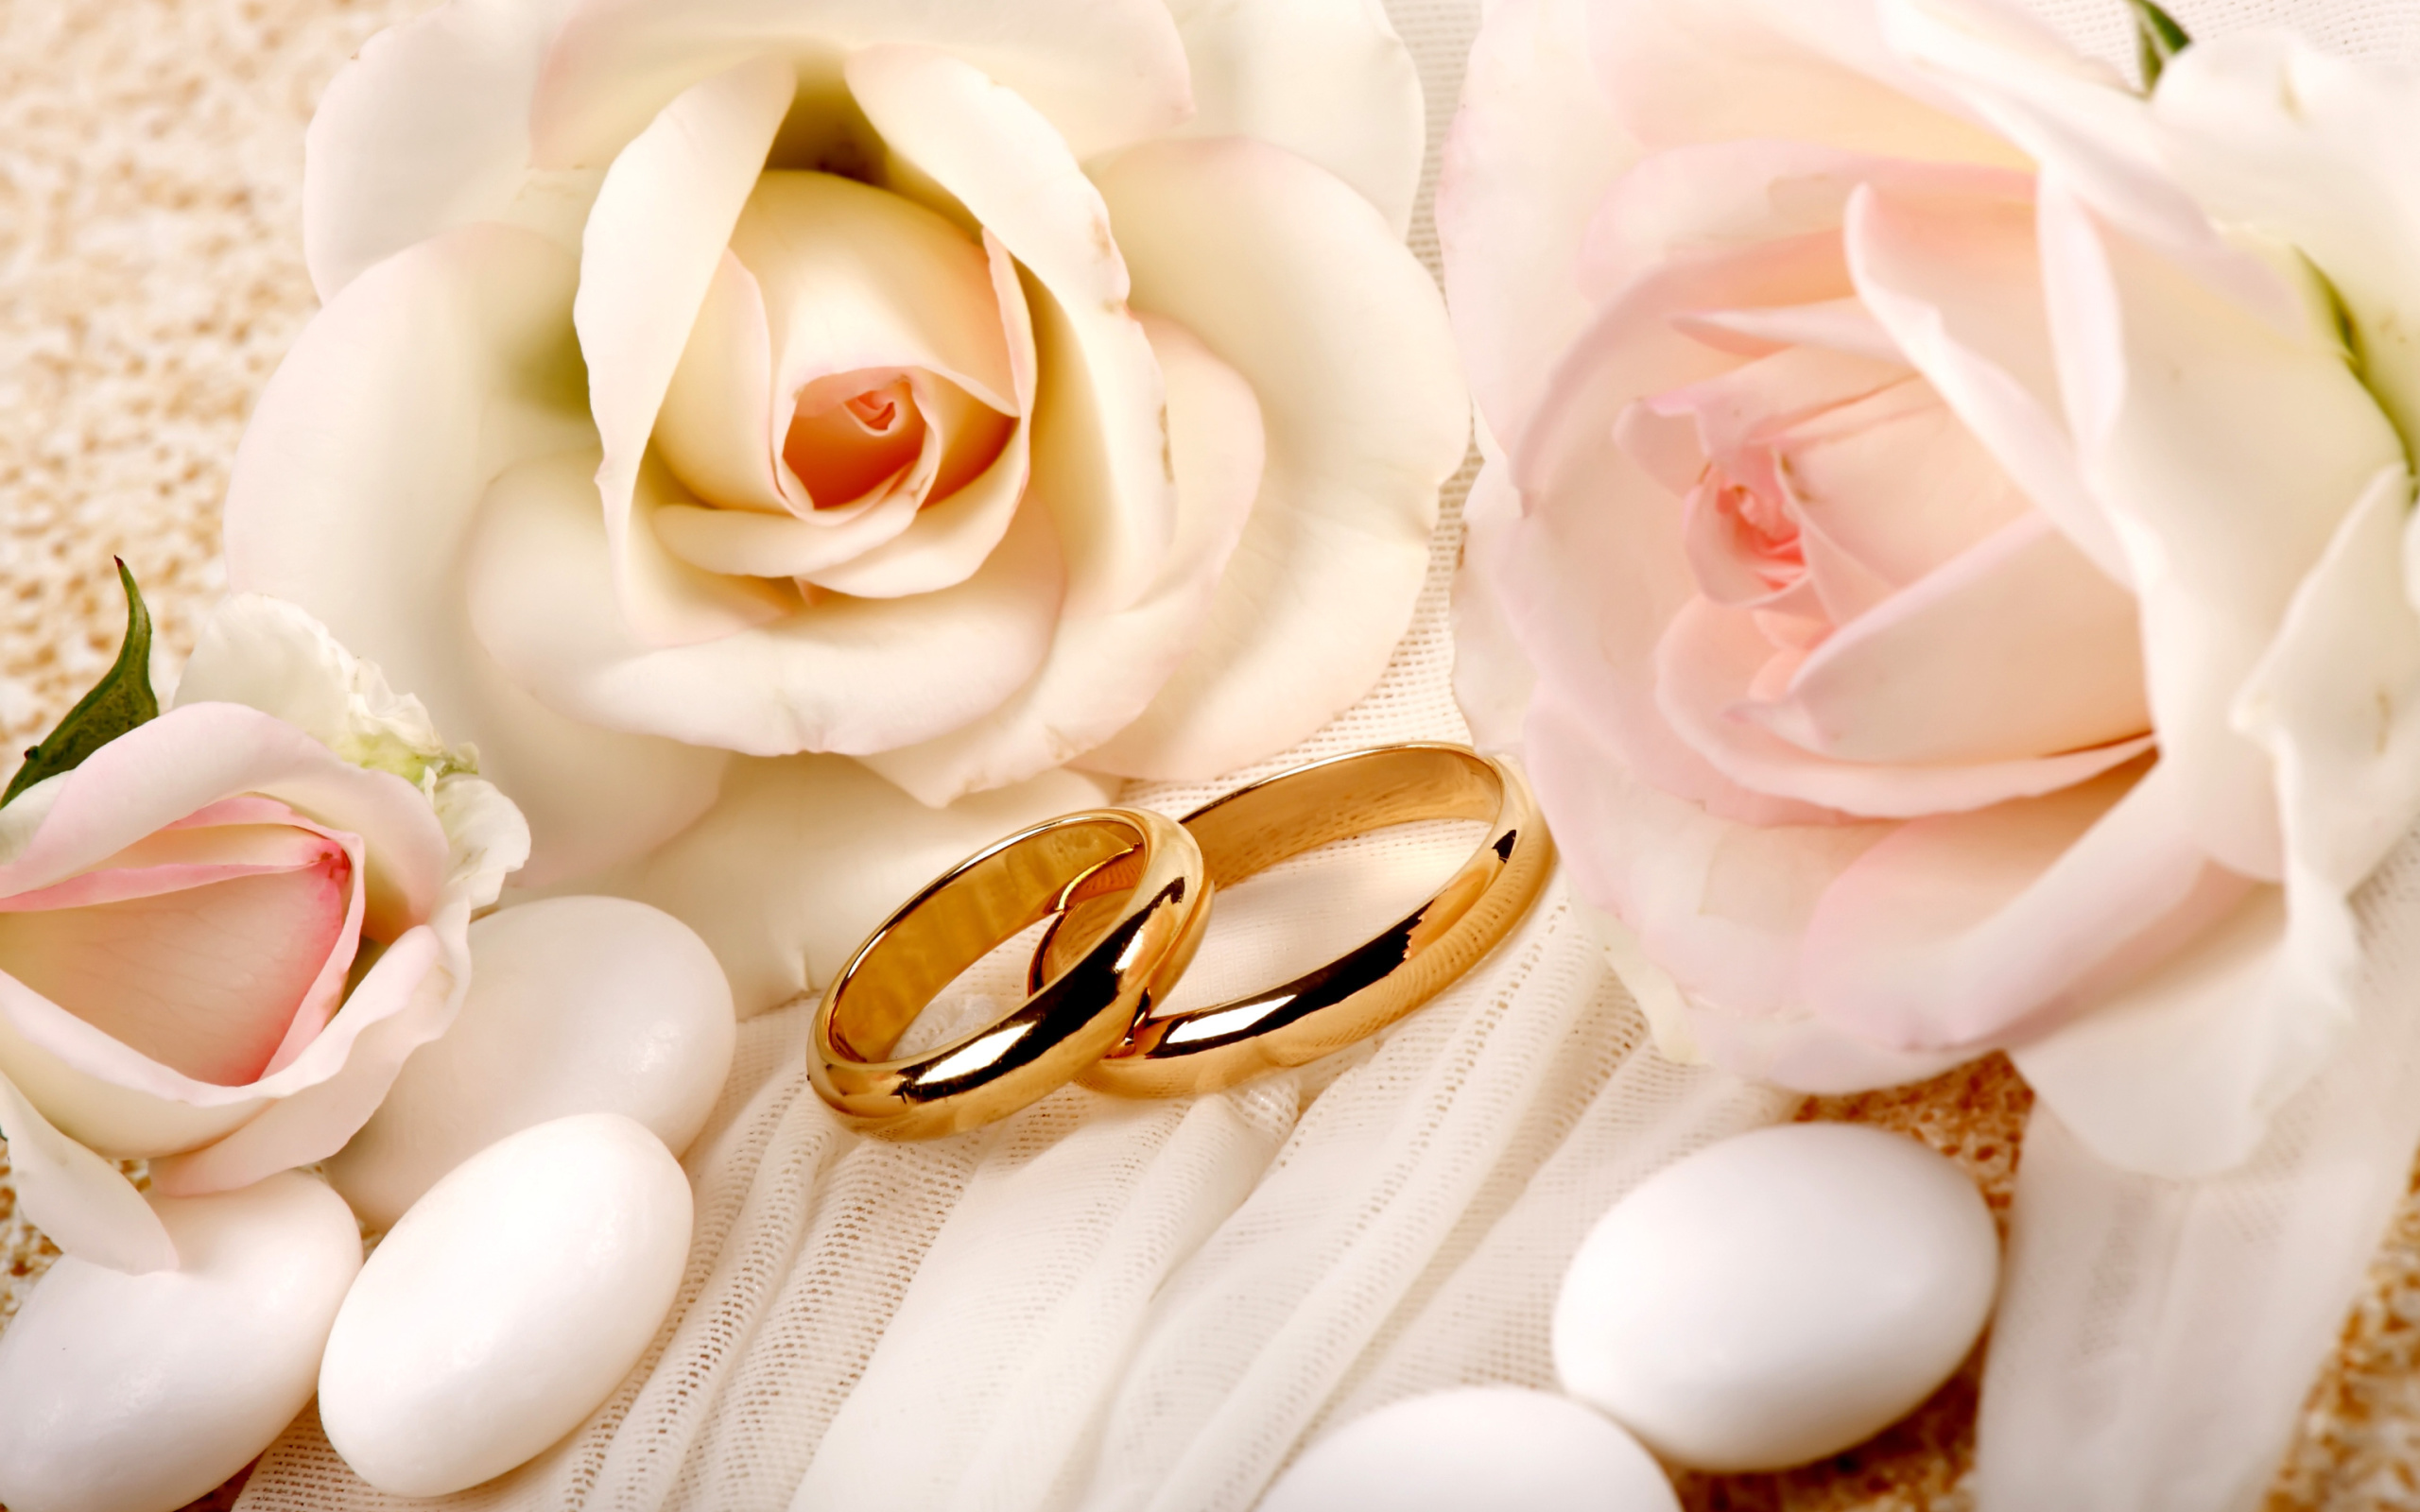 Обои Roses and Wedding Rings 2560x1600